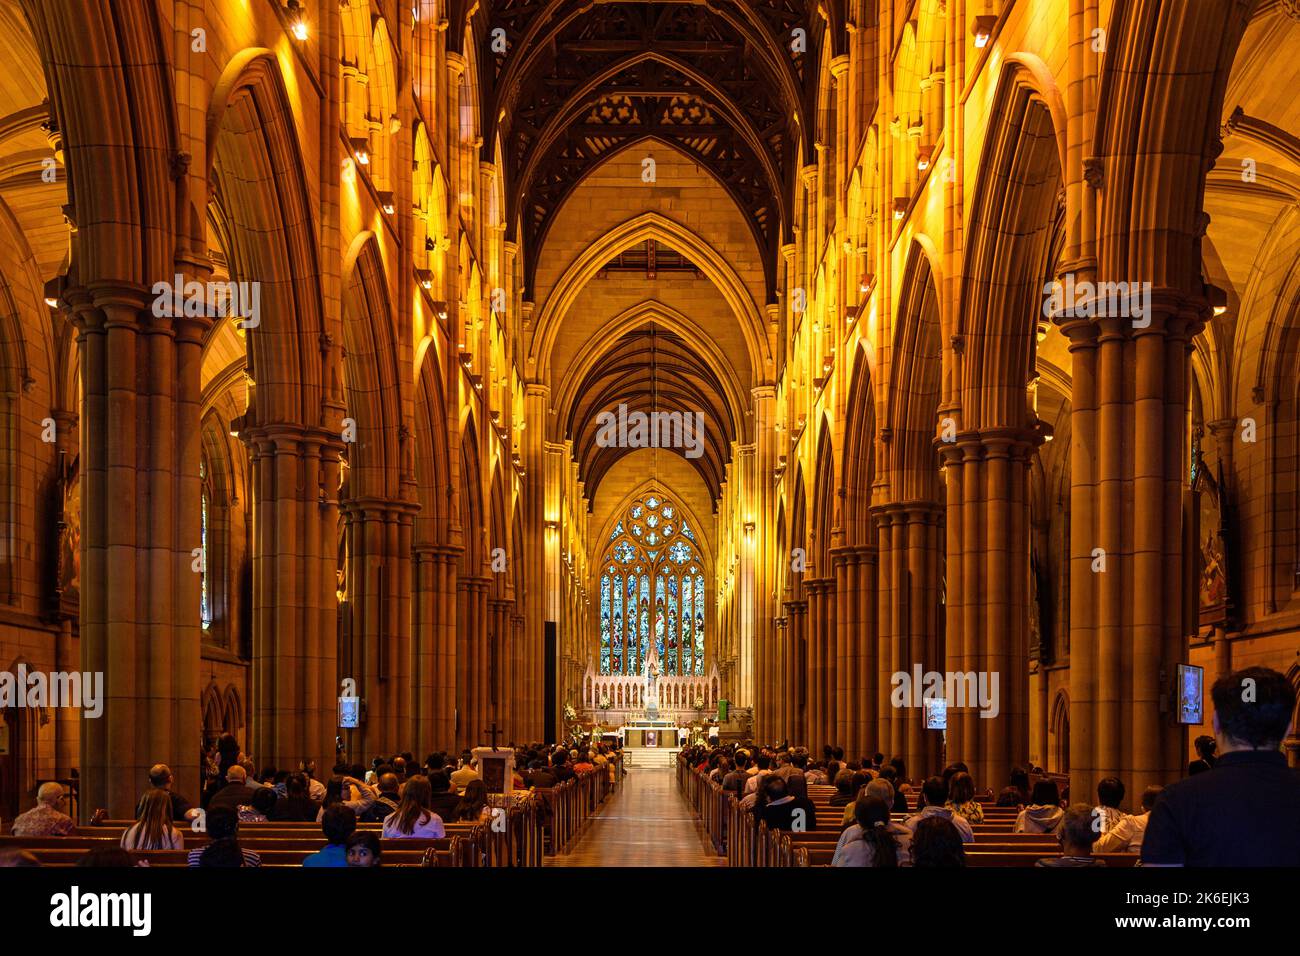 La nef centrale de la cathédrale St Mary pendant la messe à Sydney, en Australie Banque D'Images